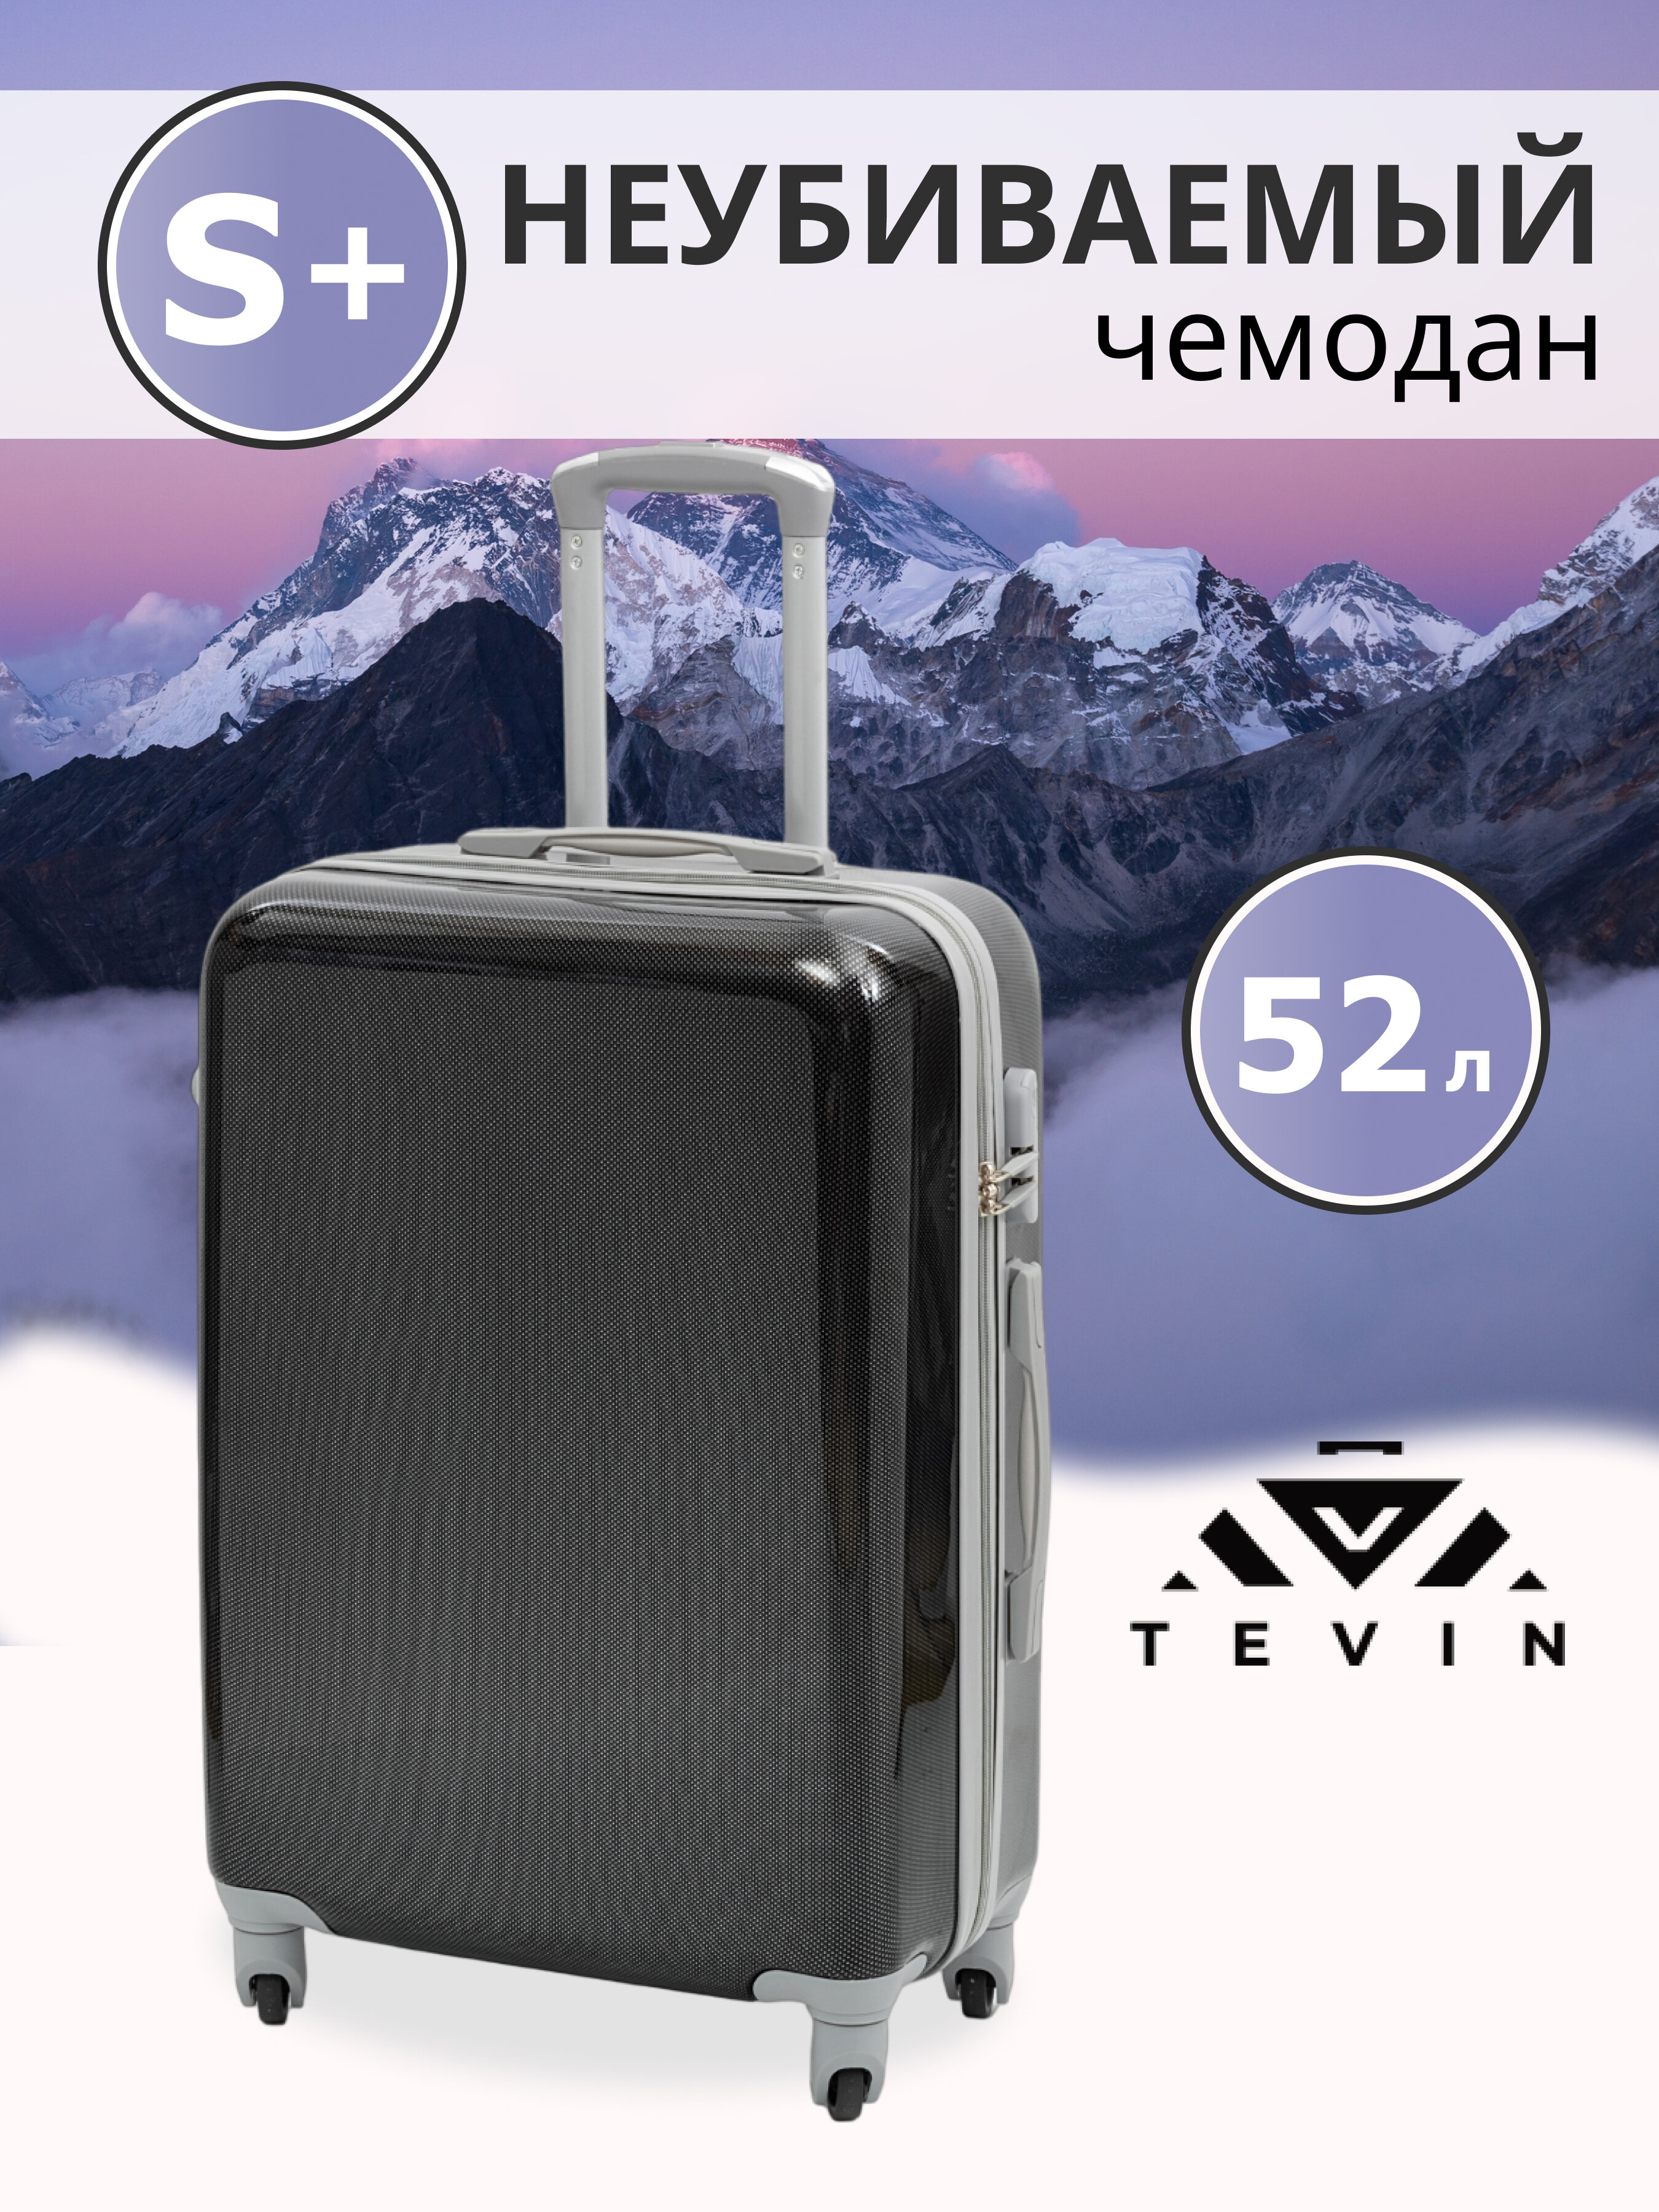 Чемодан на колесах дорожный средний багаж для путешествий s+ TEVIN размер С+ 60 см 52 л небольшой и легкий 2.6 кг прочный поликарбонат Коричневый